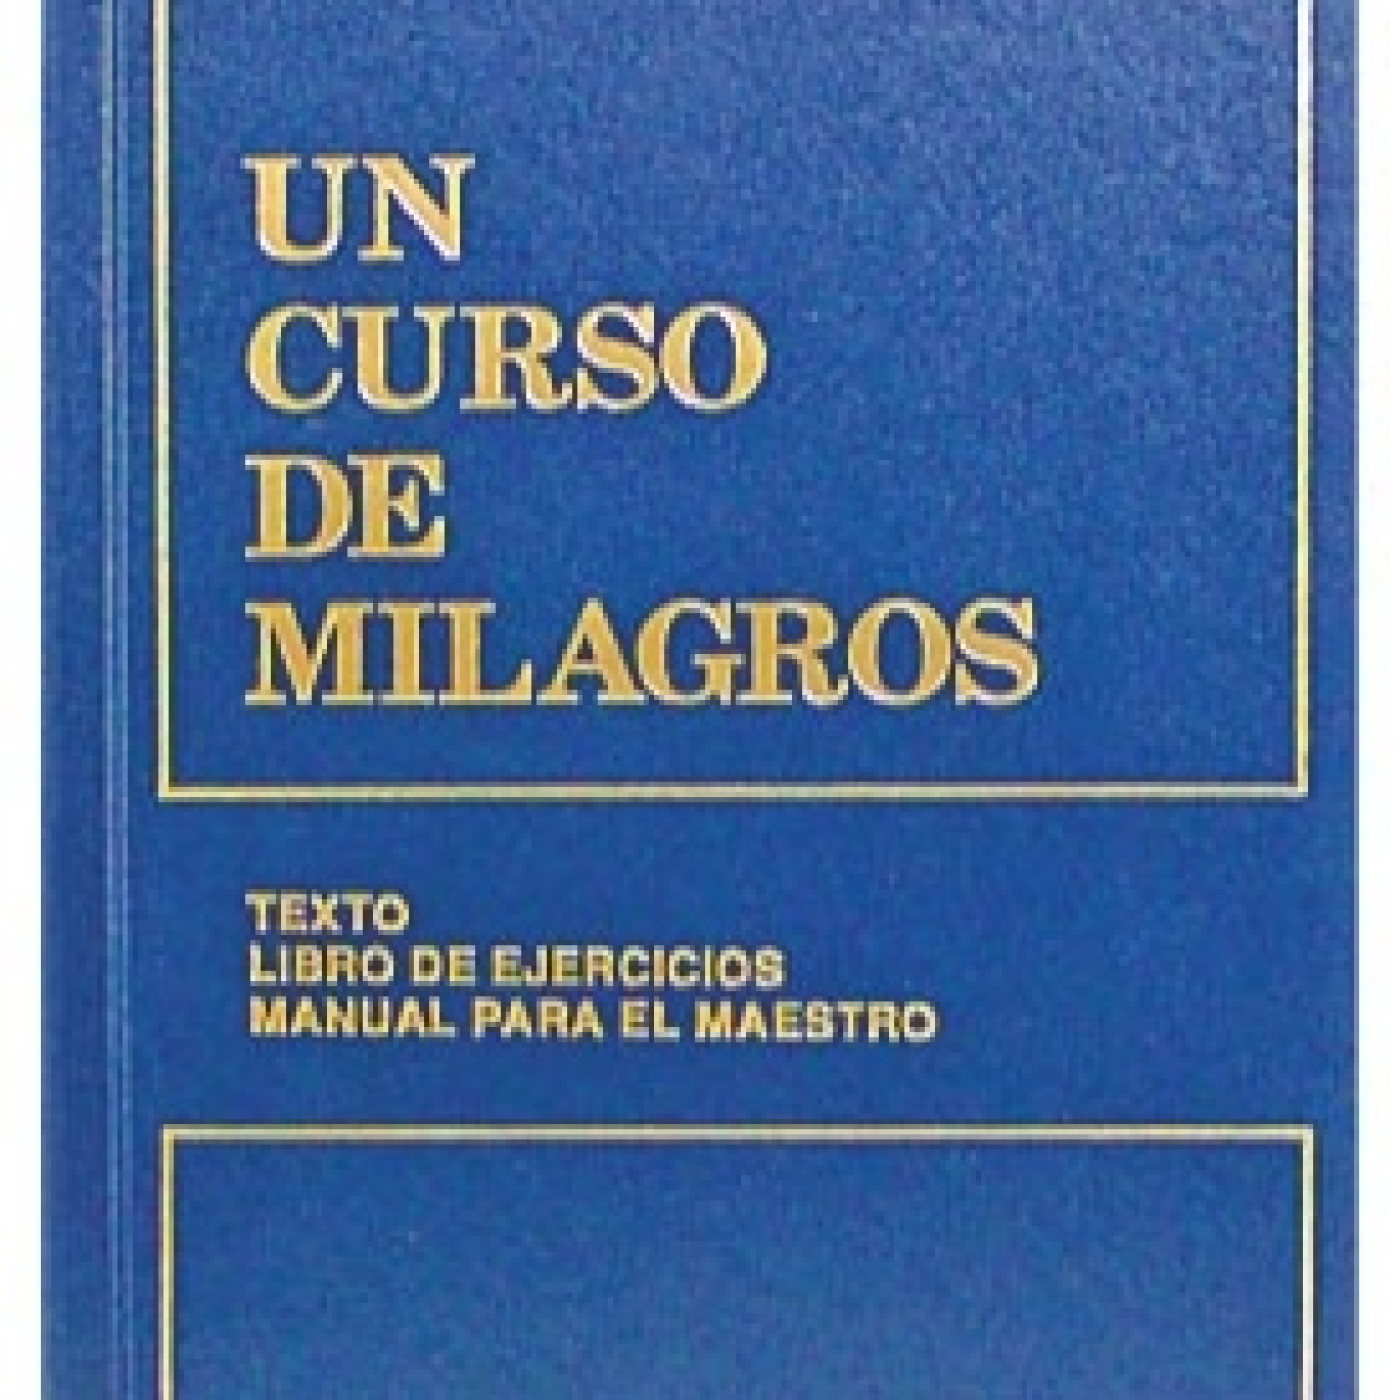 UN CURSO DE MILAGROS - 13.0 - Introducción (1 a 4 de 4)